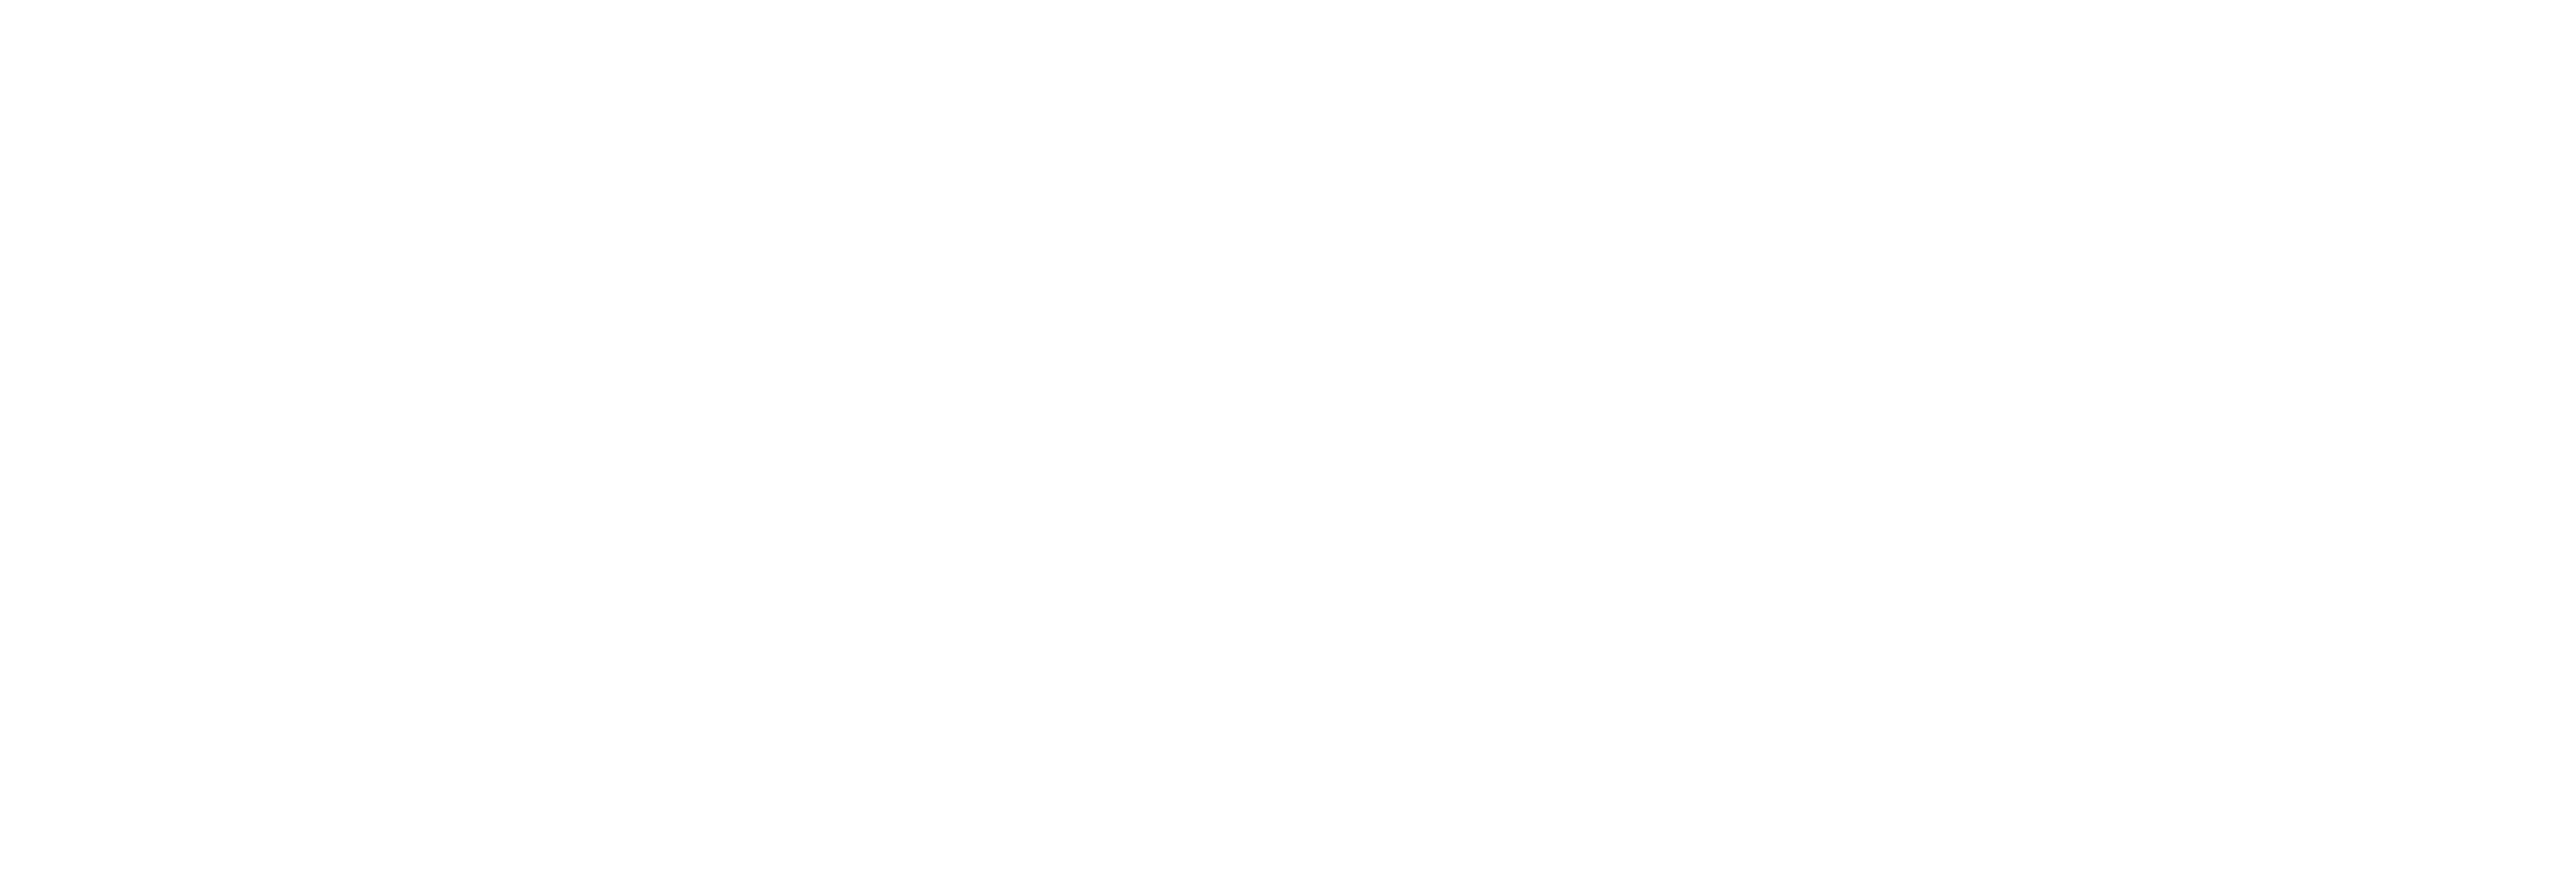 AniCura Alhaurín El Grande Hospital Veterinario logo